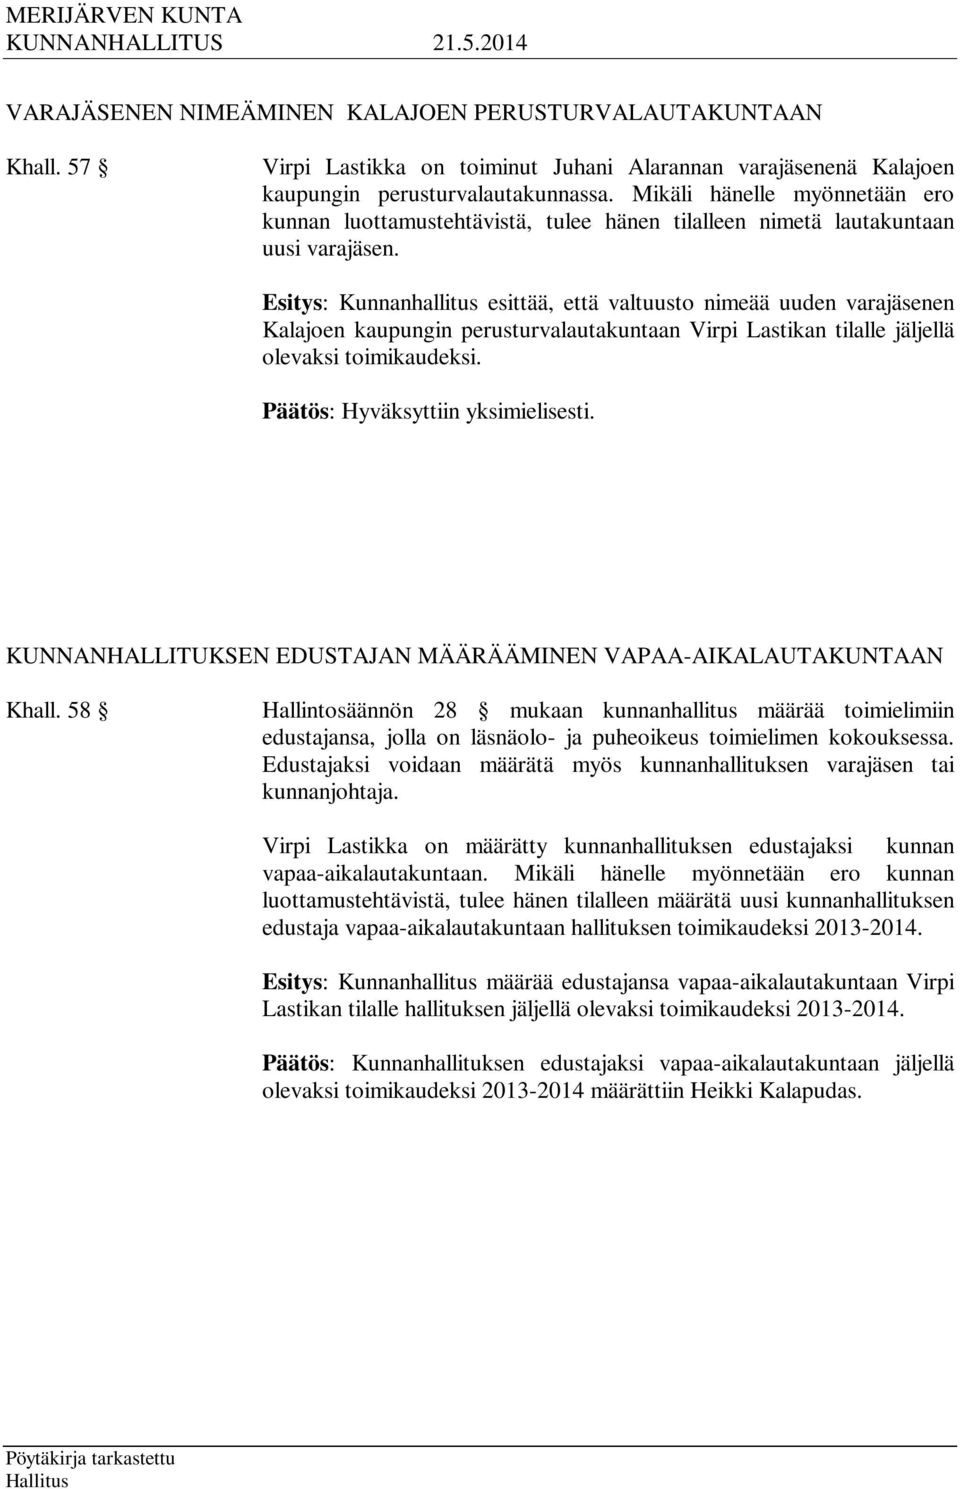 Esitys: Kunnanhallitus esittää, että valtuusto nimeää uuden varajäsenen Kalajoen kaupungin perusturvalautakuntaan Virpi Lastikan tilalle jäljellä olevaksi toimikaudeksi.